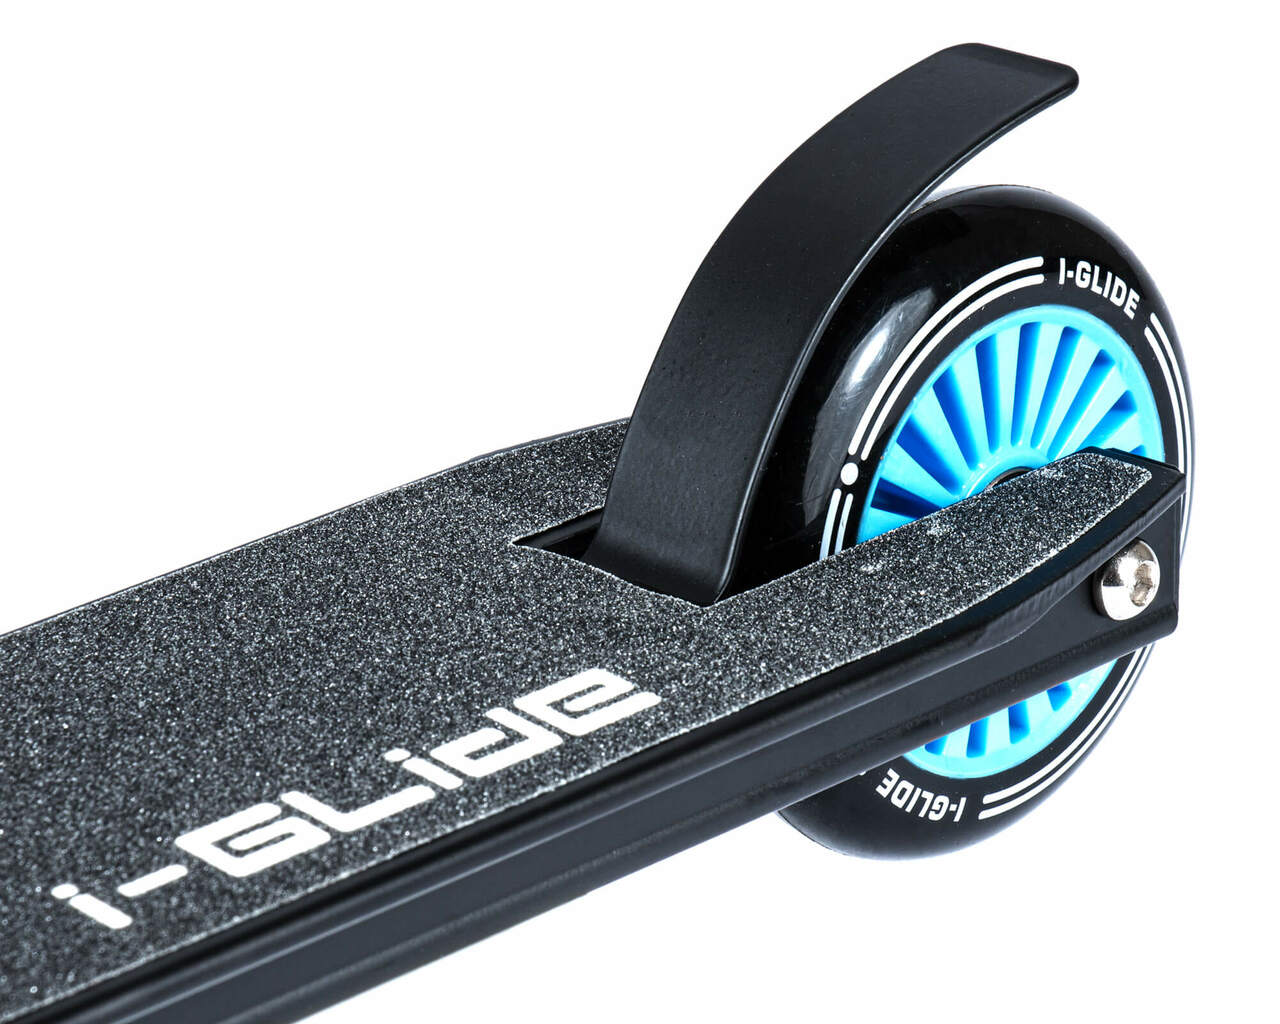 I-GLIDE | Complete Scooter | JR | Black / Blue